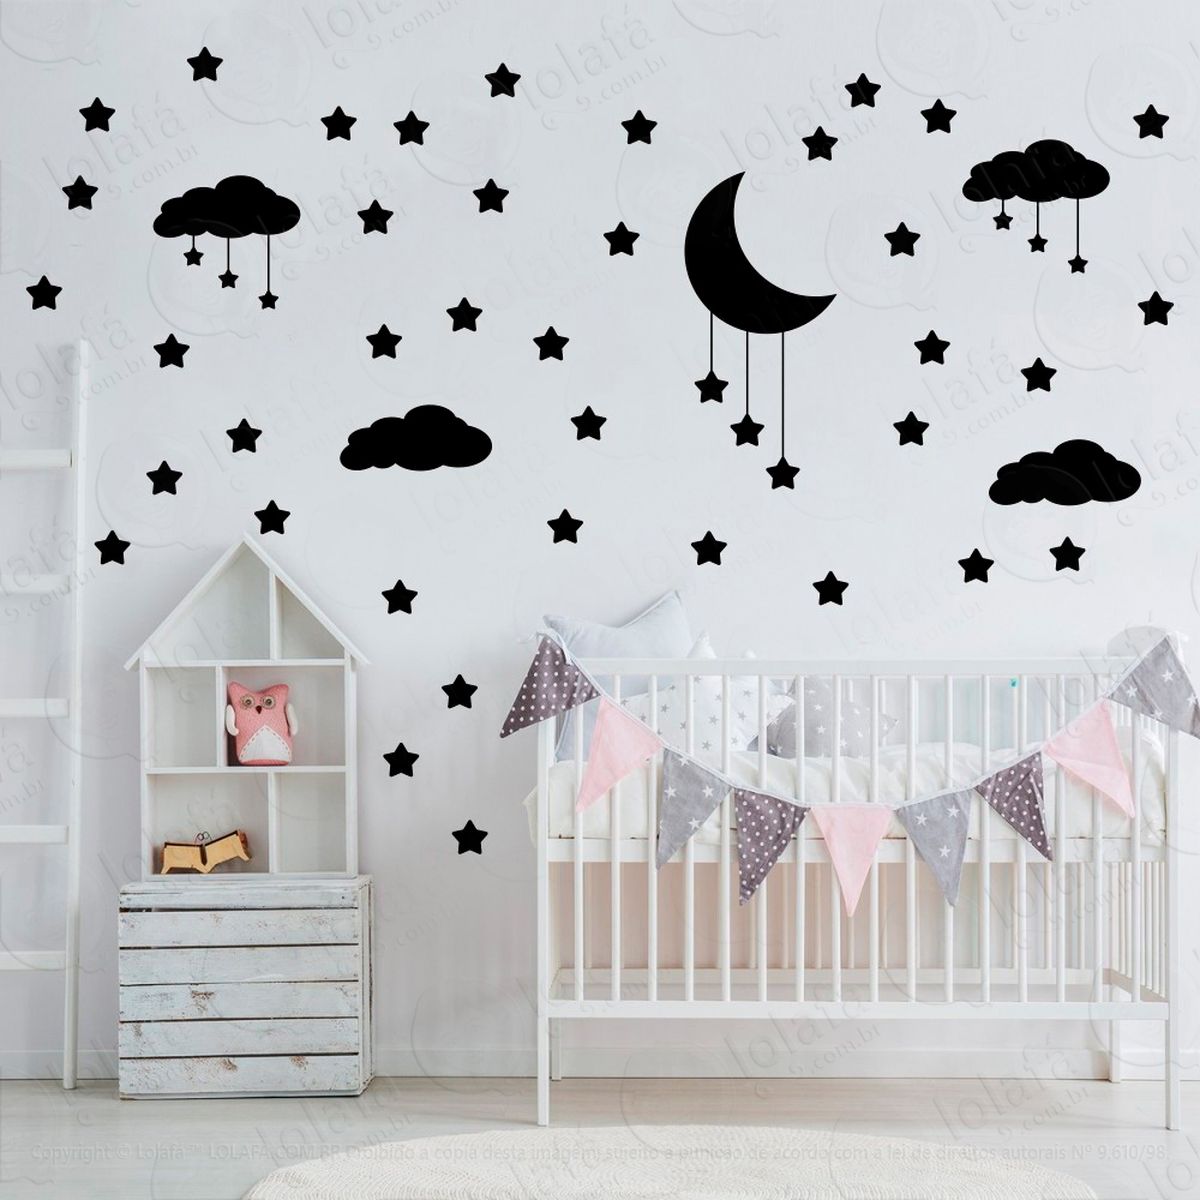 adesivos nuvens estrelas e lua 60 peças adesivos para quarto de bebê infantil - mod:742